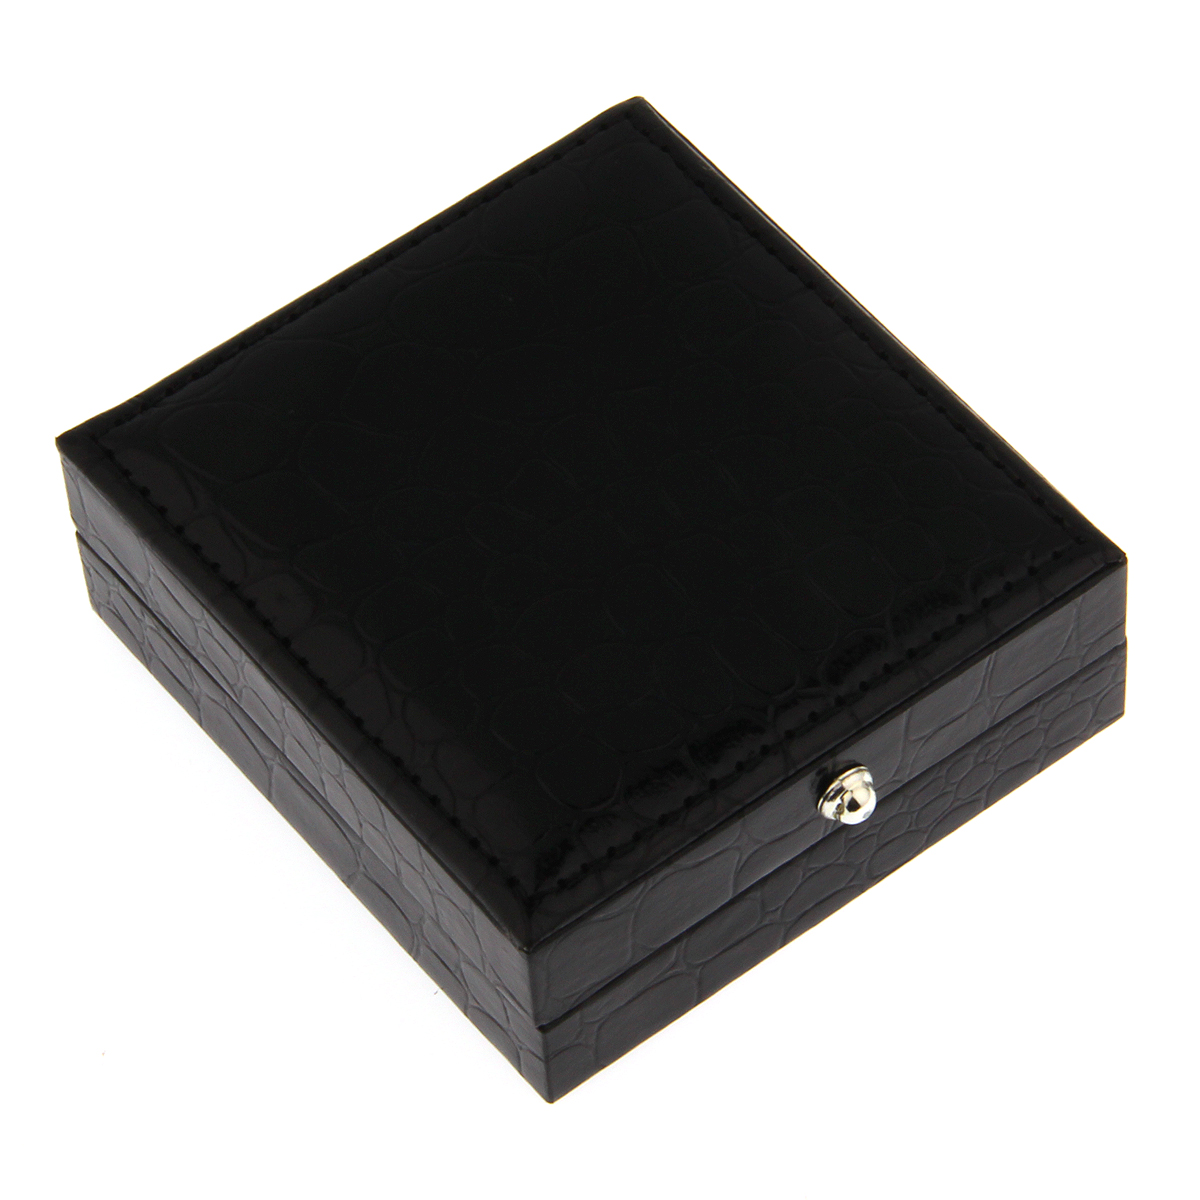 黑色仿鳄鱼皮袖扣盒 一对装/两对装/袖扣领夹盒包装盒礼盒110002